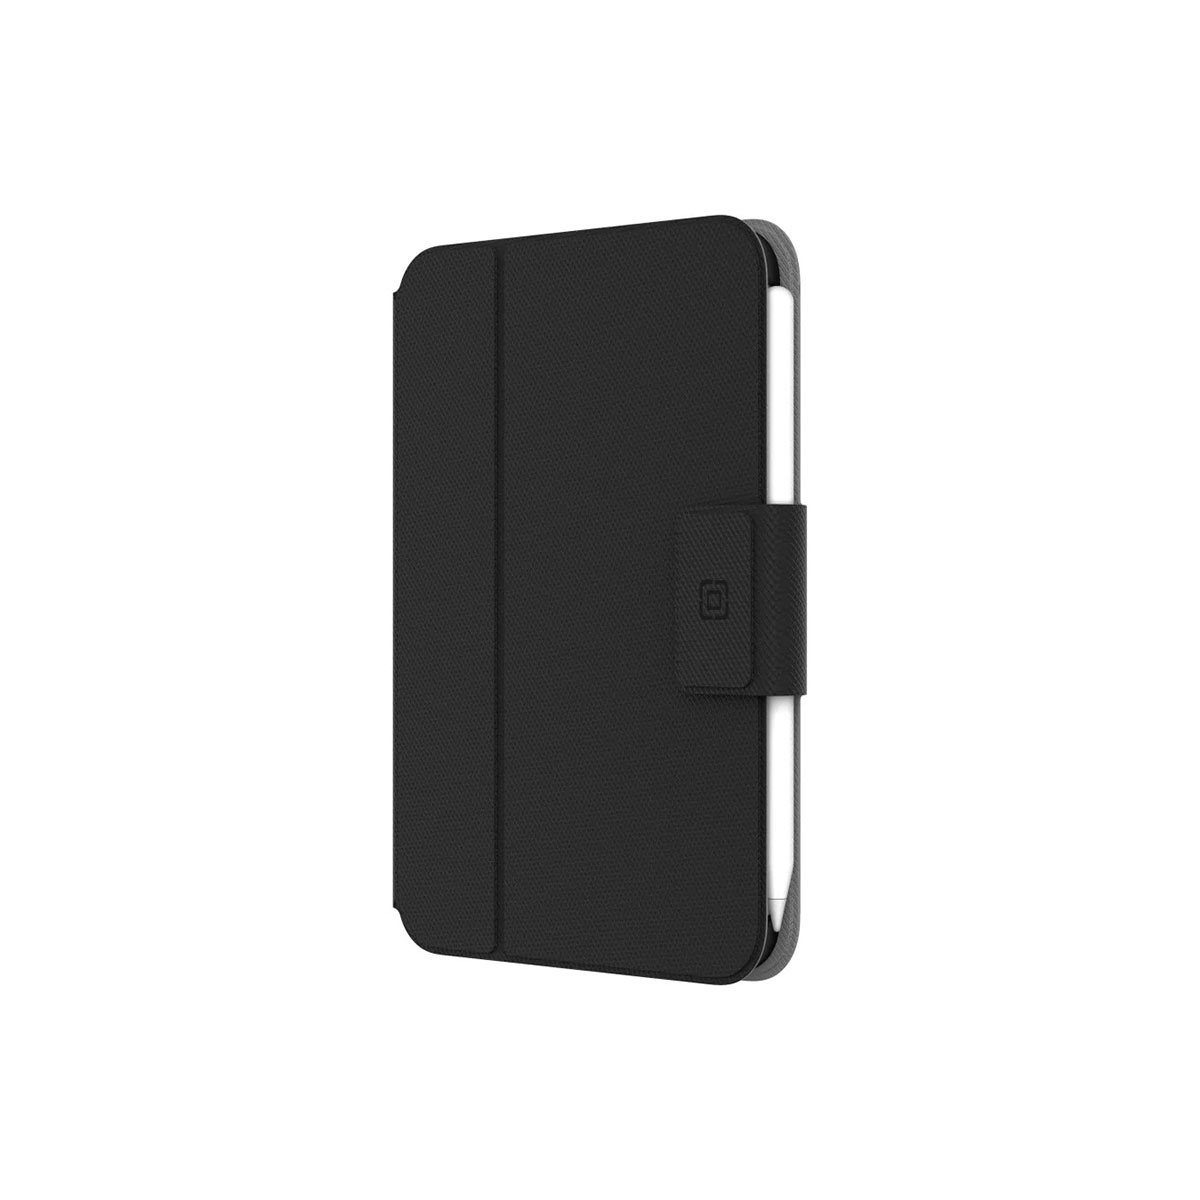 Incipio - SureView for iPad mini case, Folio Black